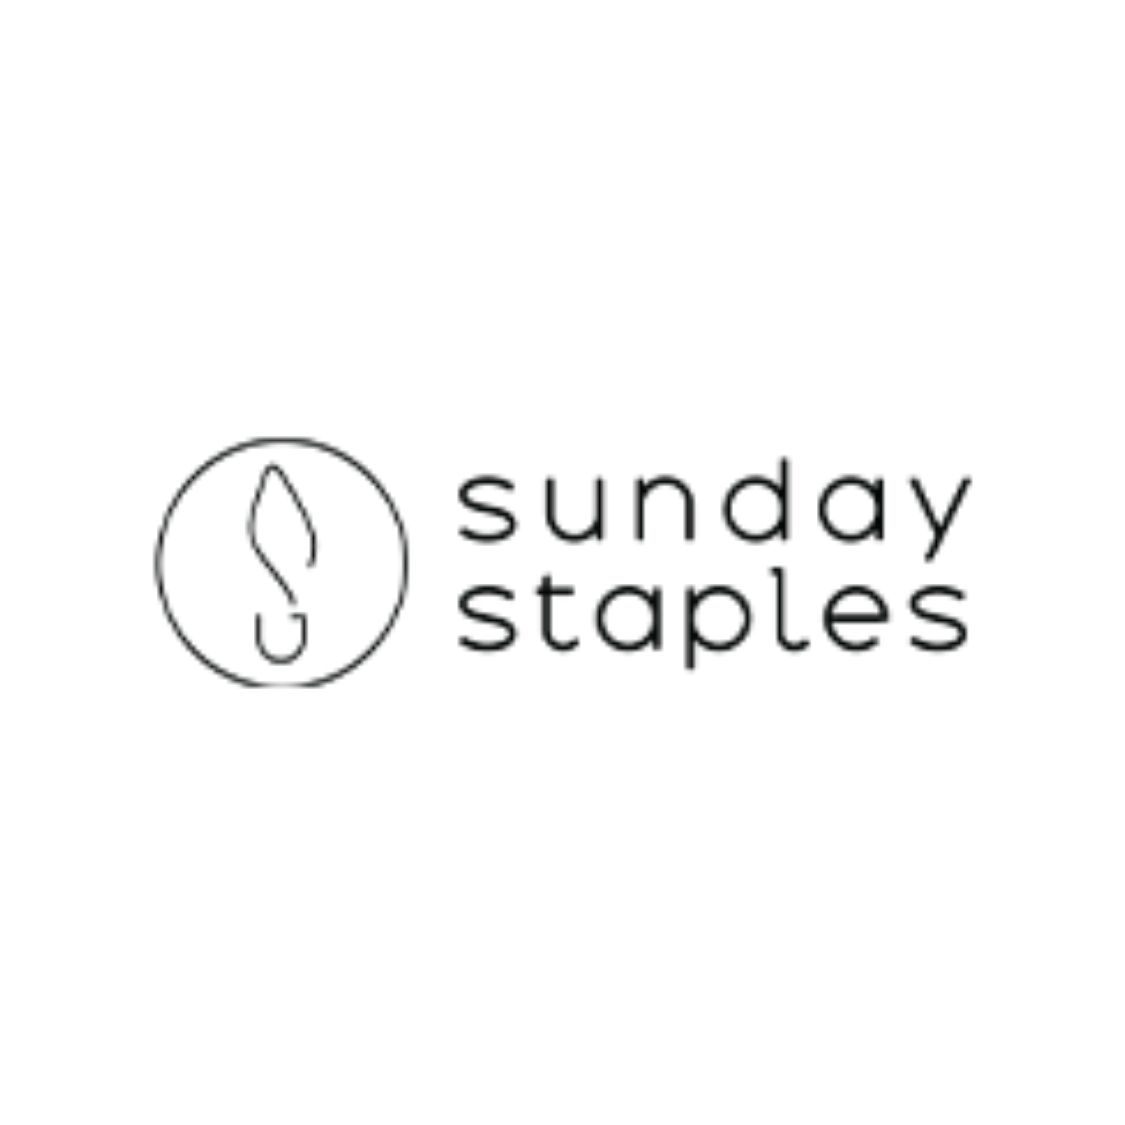 Sunday Staples Logo.jpg